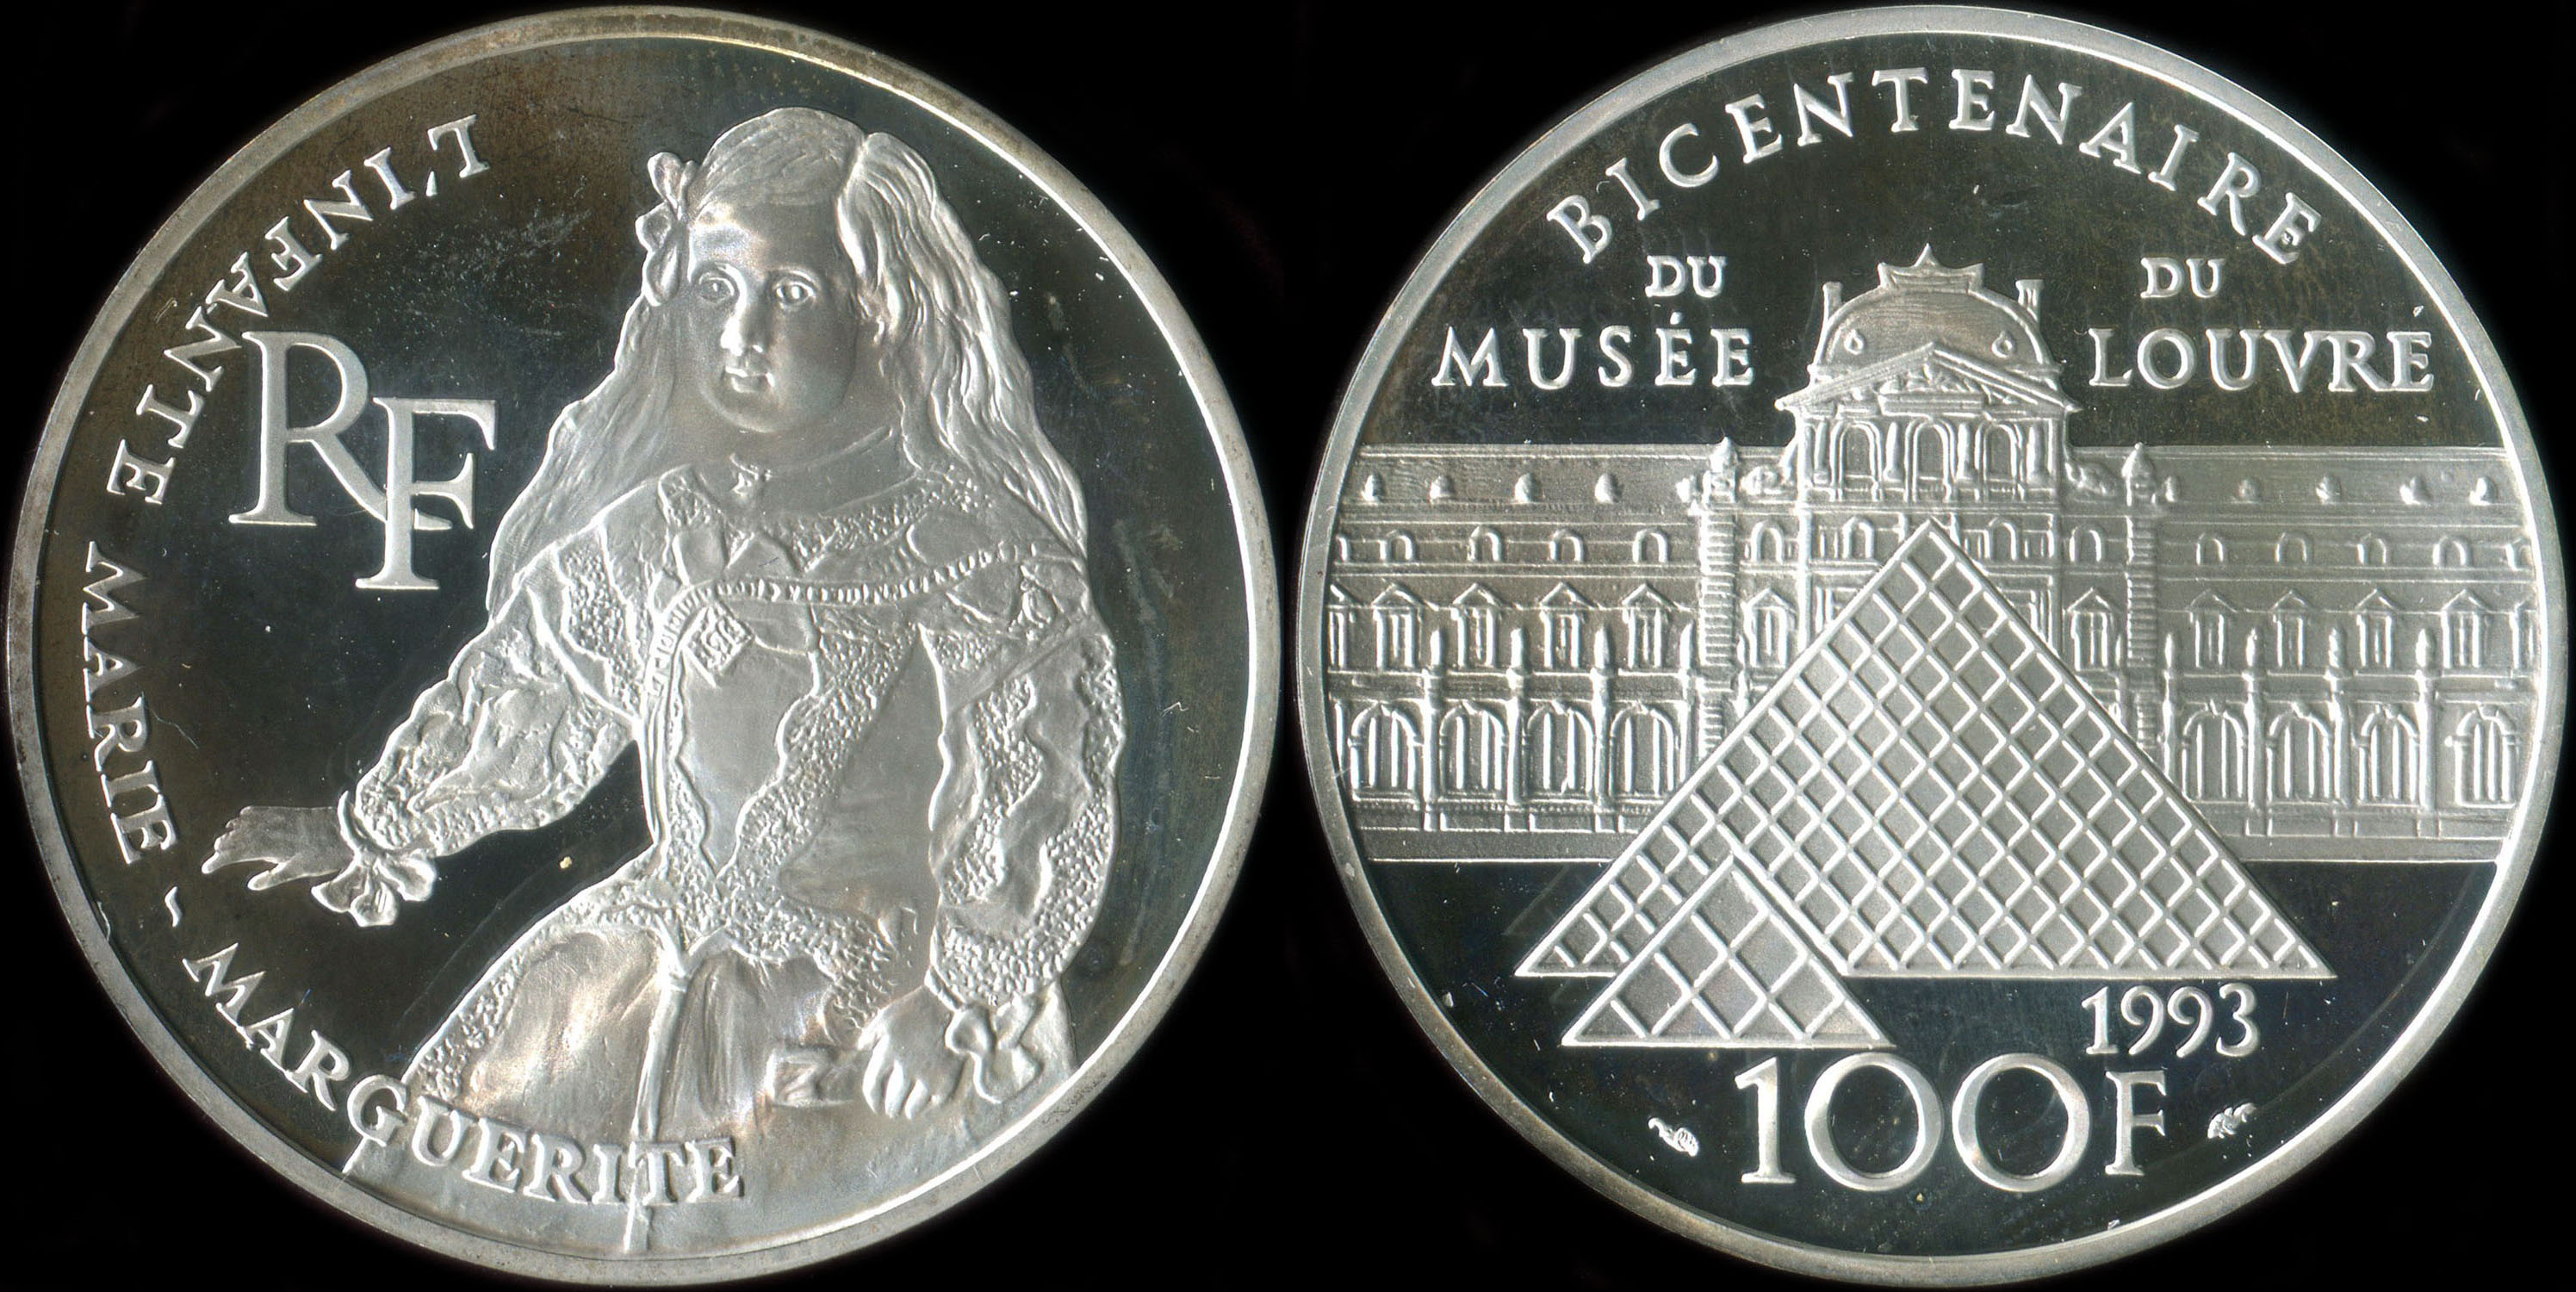 Pice de 100 francs 1993 - Bicentenaire du Muse du Louvre - L'Infante Marie-Marguerite